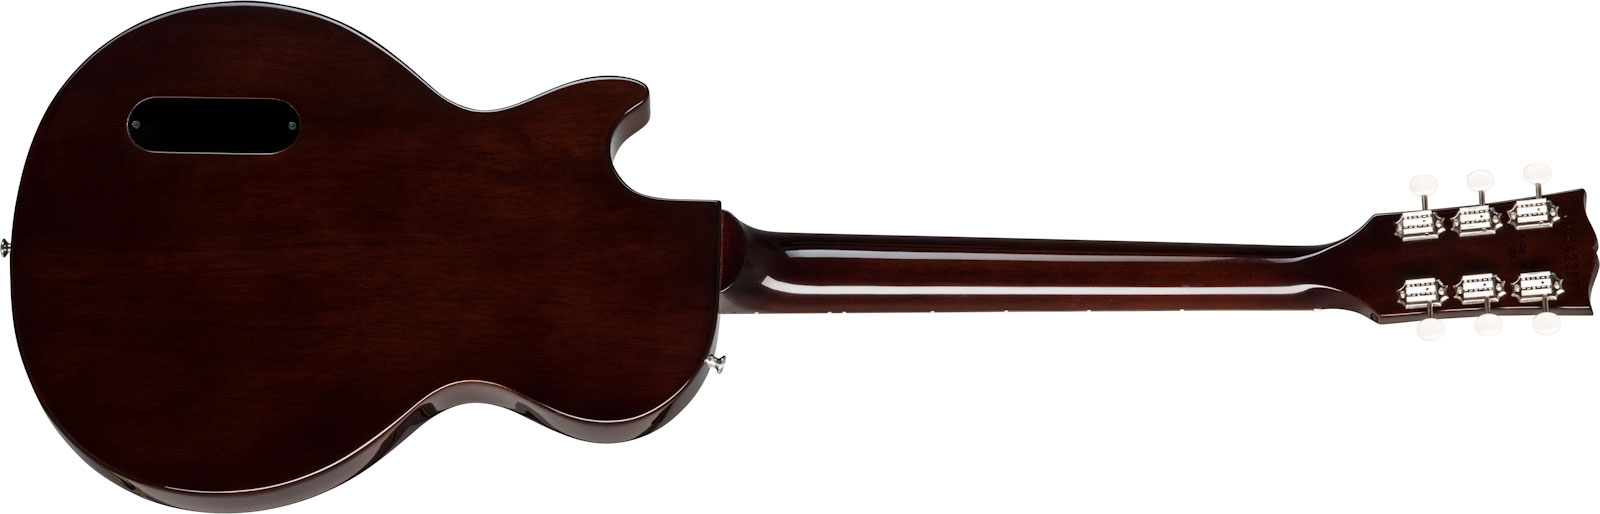 Gibson Les Paul Special Lh Original Gaucher 2p90 Ht Rw - Vintage Tobacco Burst - Linkshandige elektrische gitaar - Variation 1